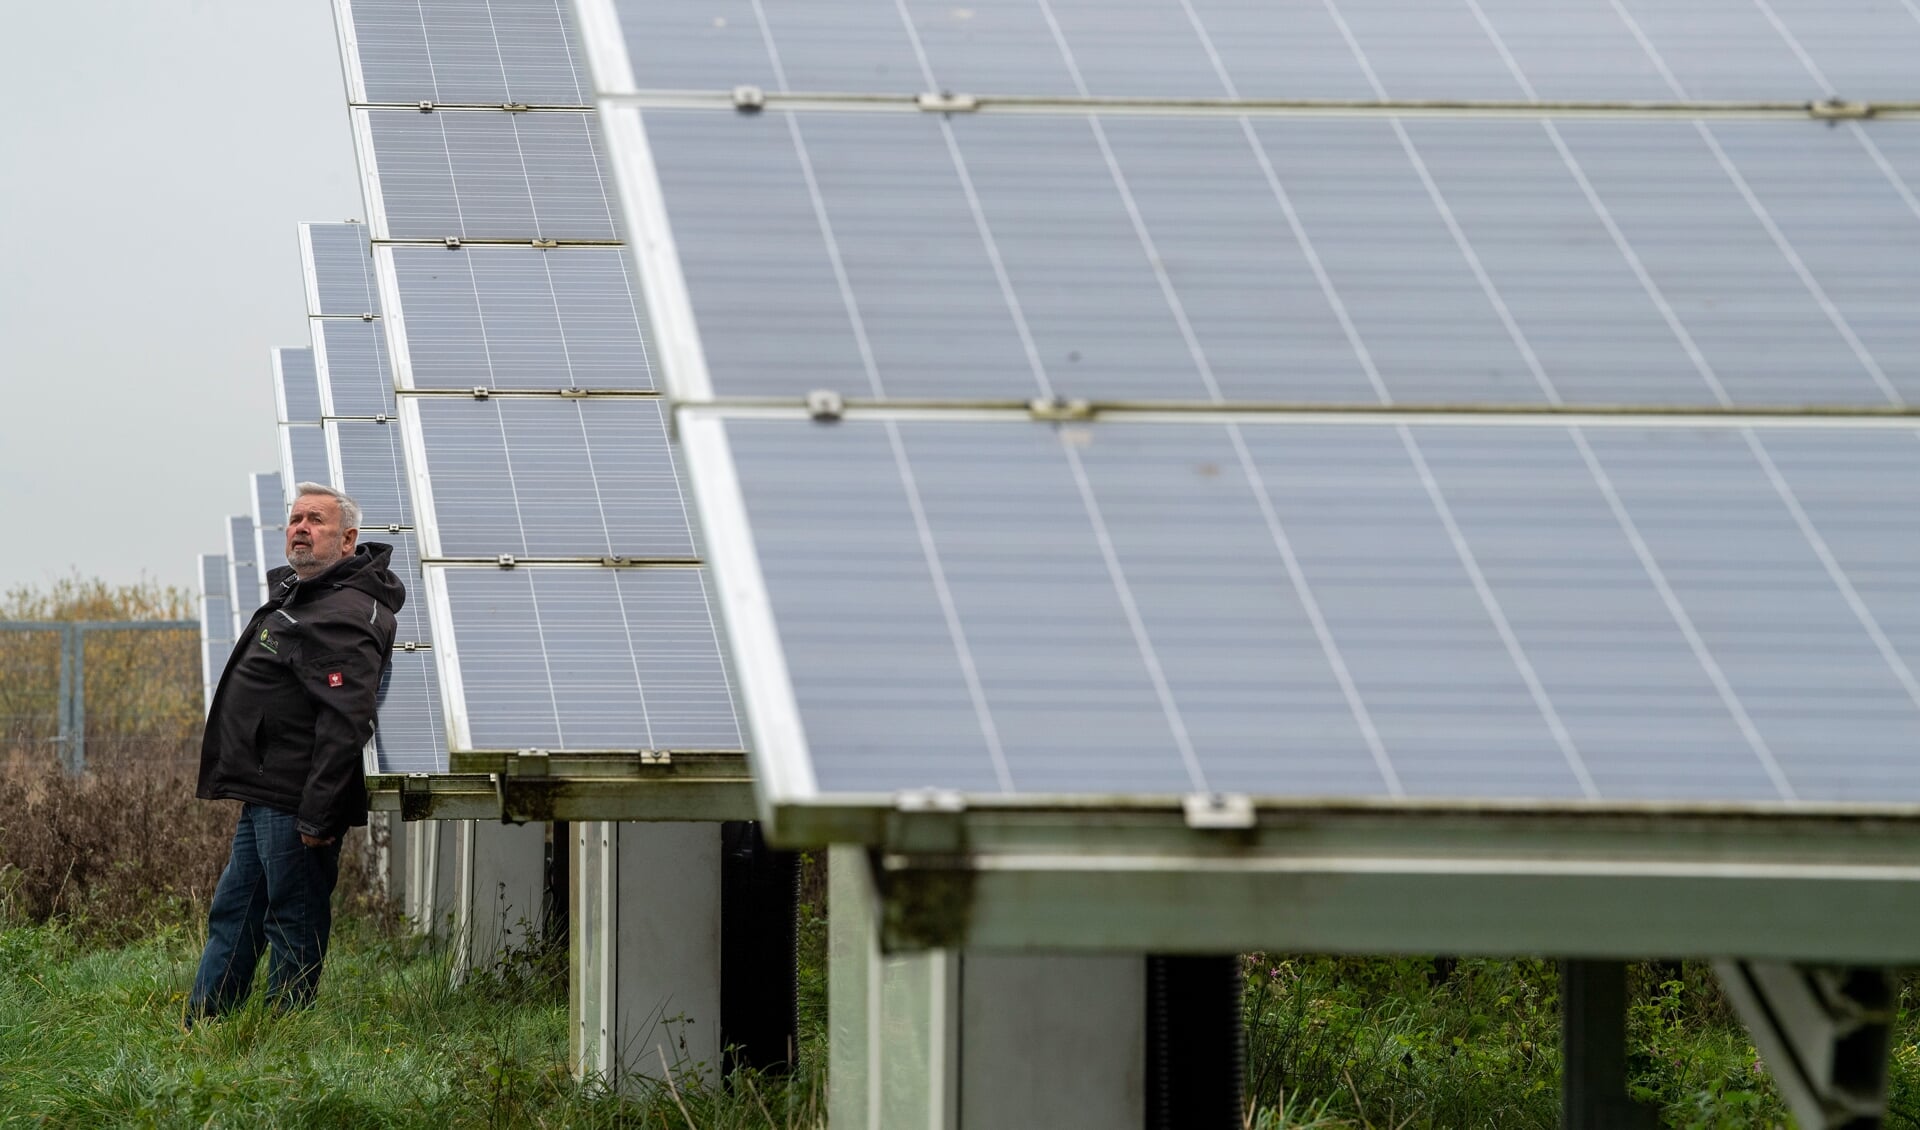 At investere i solarenergi handler ikke kun om at tjene penge, understreger Hans Christian Andresen, stifter af virksomheden Solar-Energie Andresen. Det handler om at være med til at efterlade verden i bedre stand, når det gælder klima og bæredygtighed.